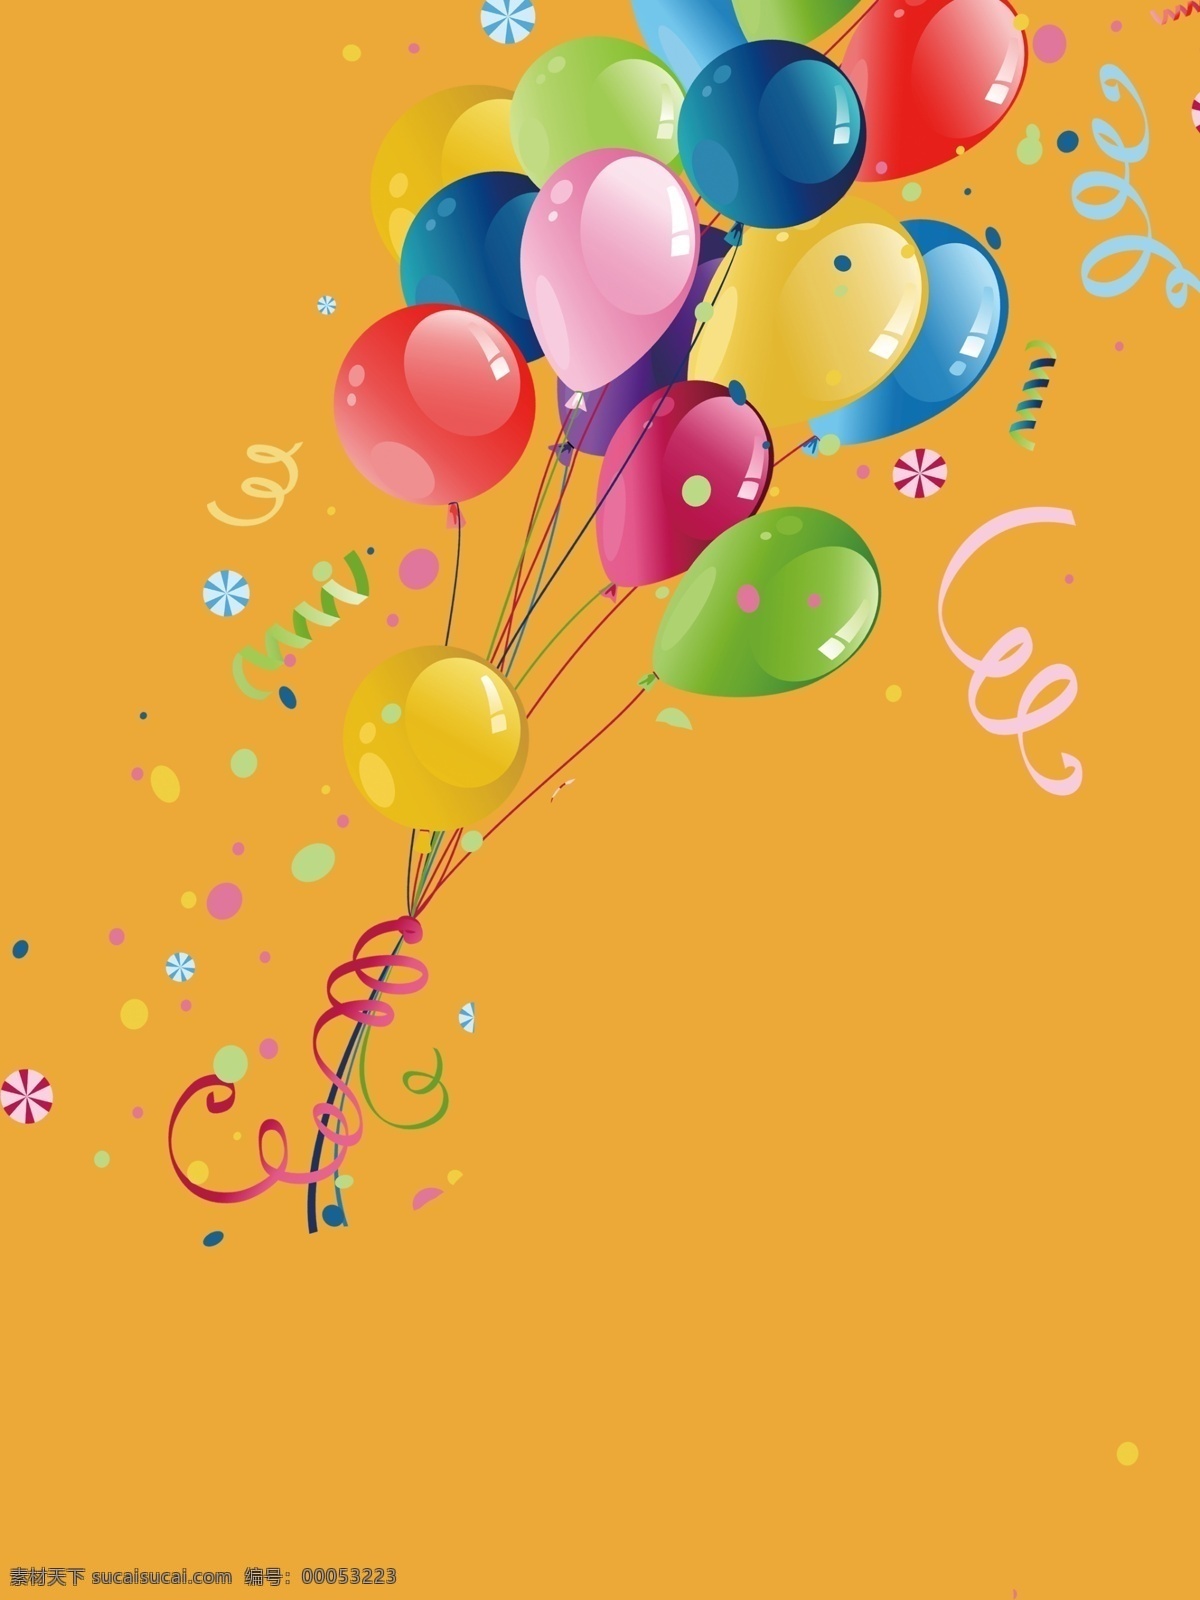 彩色气球 气球 椅子 凳子 拍照 照片 拍摄 气球造型 氢气球 派对 庆祝 生活百科 生活素材 矢量图